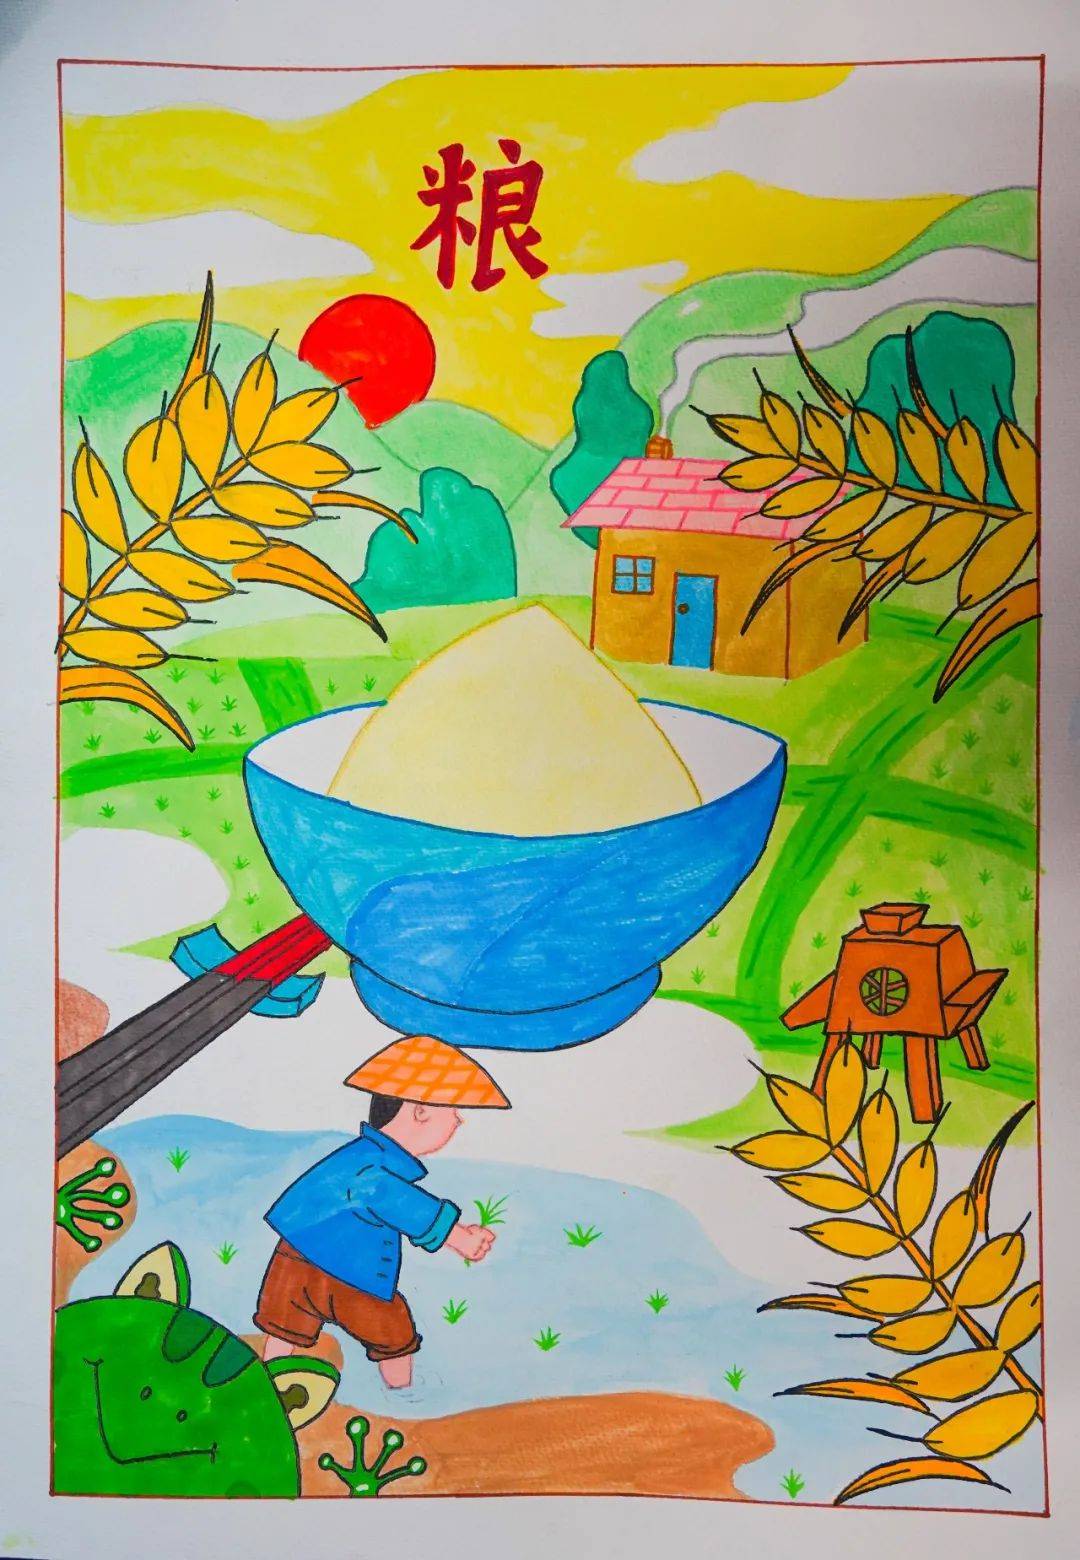 德育处特别开展了"节约粮食"的主题书画活动,发动全体师生通过绘画